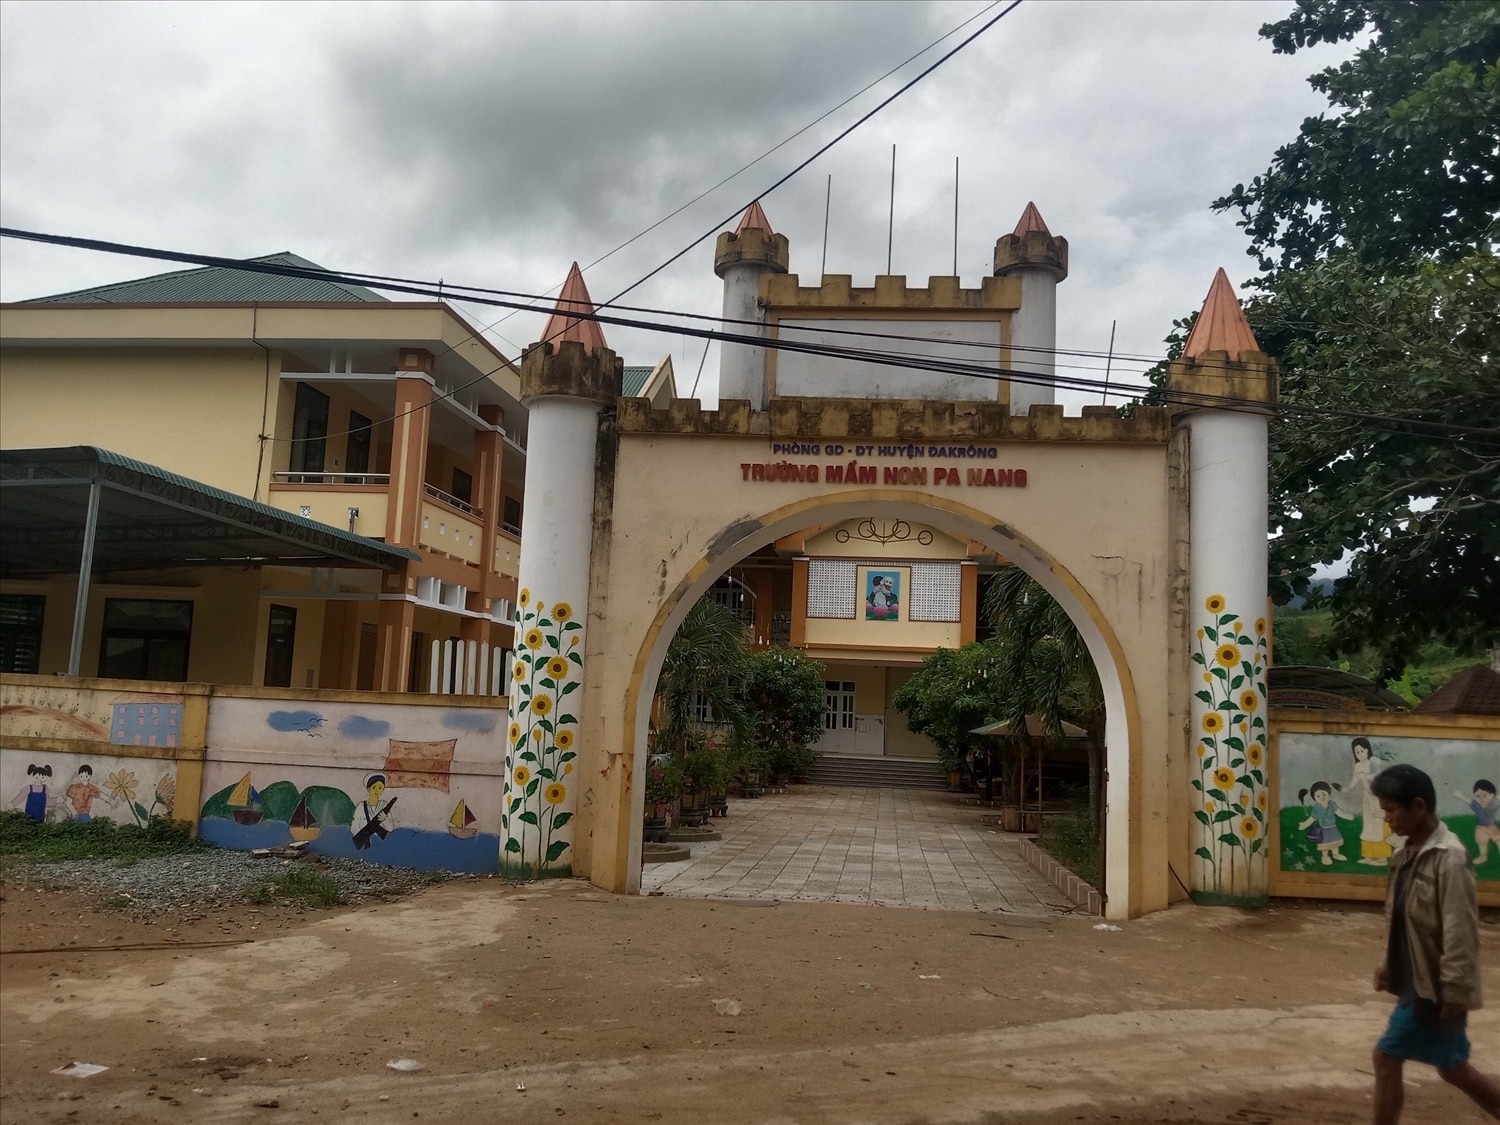 Trường Mầm non Pa Nang, xã Ba Nang, huyện Đakrông với gần 100% là con em đồng bào DTTS học tập